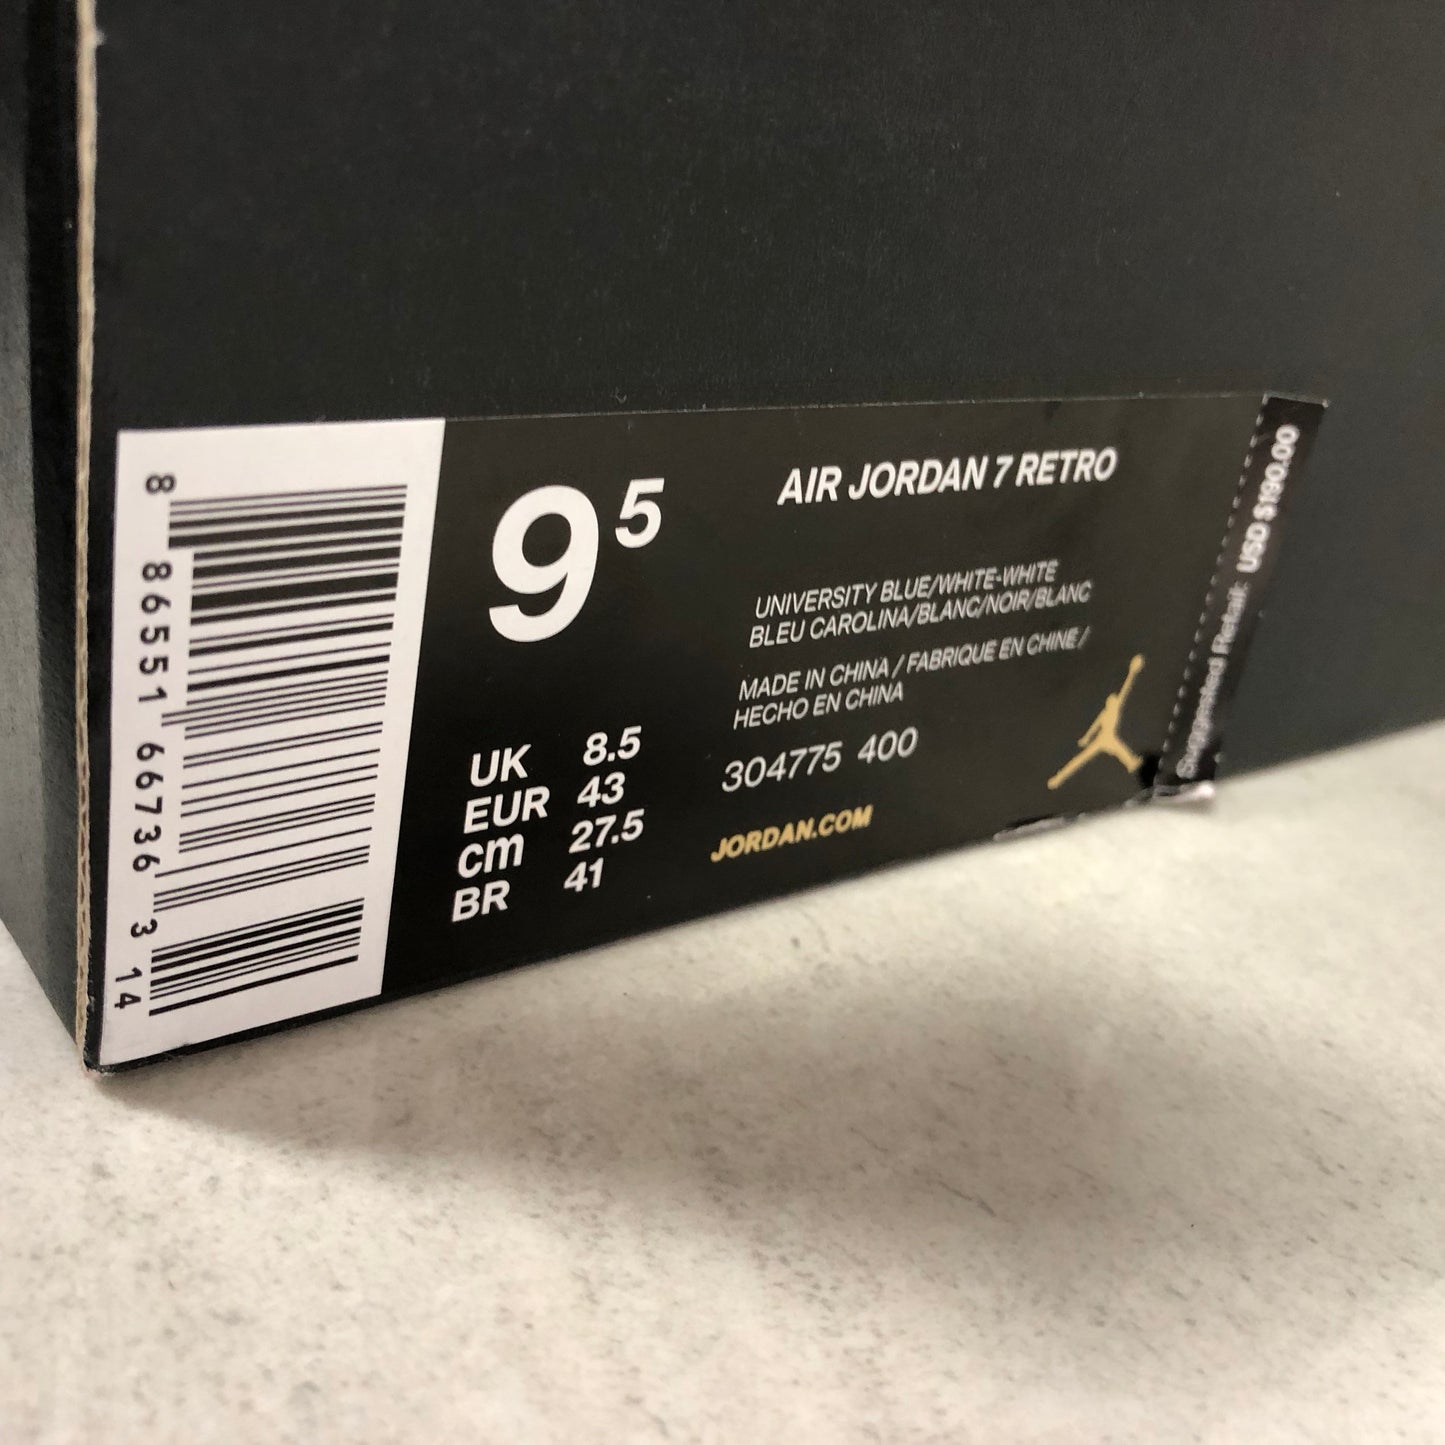 Nike Air Jordan 7 VII Retro Pantone 304775 400 Men's Size 9.5